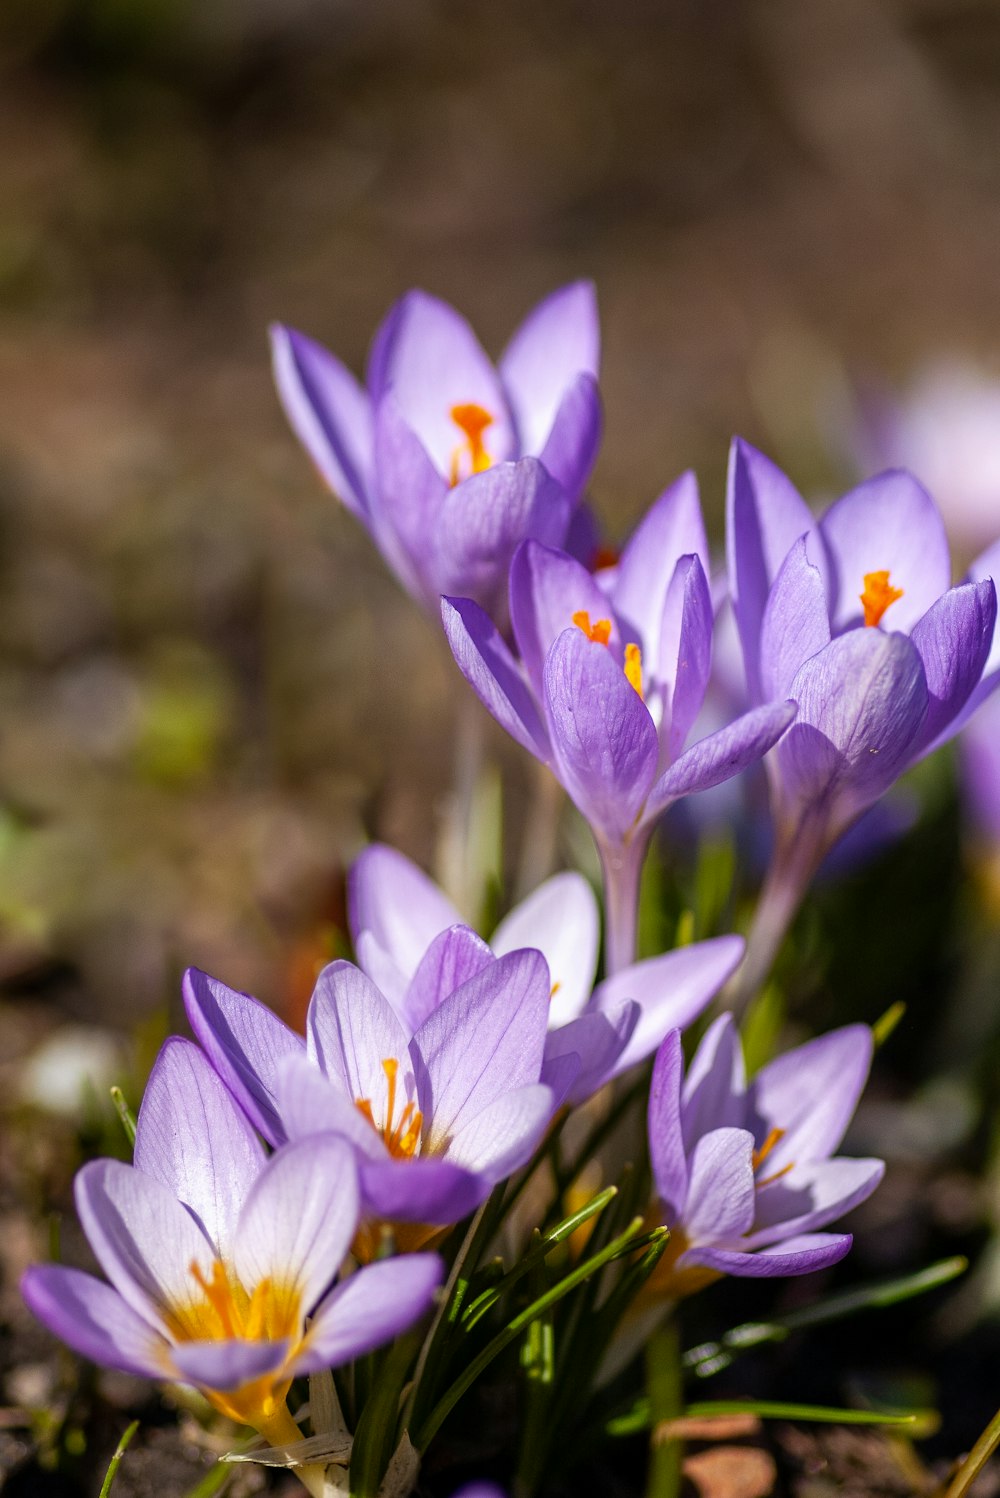 purple crocus flowers in bloom during daytime